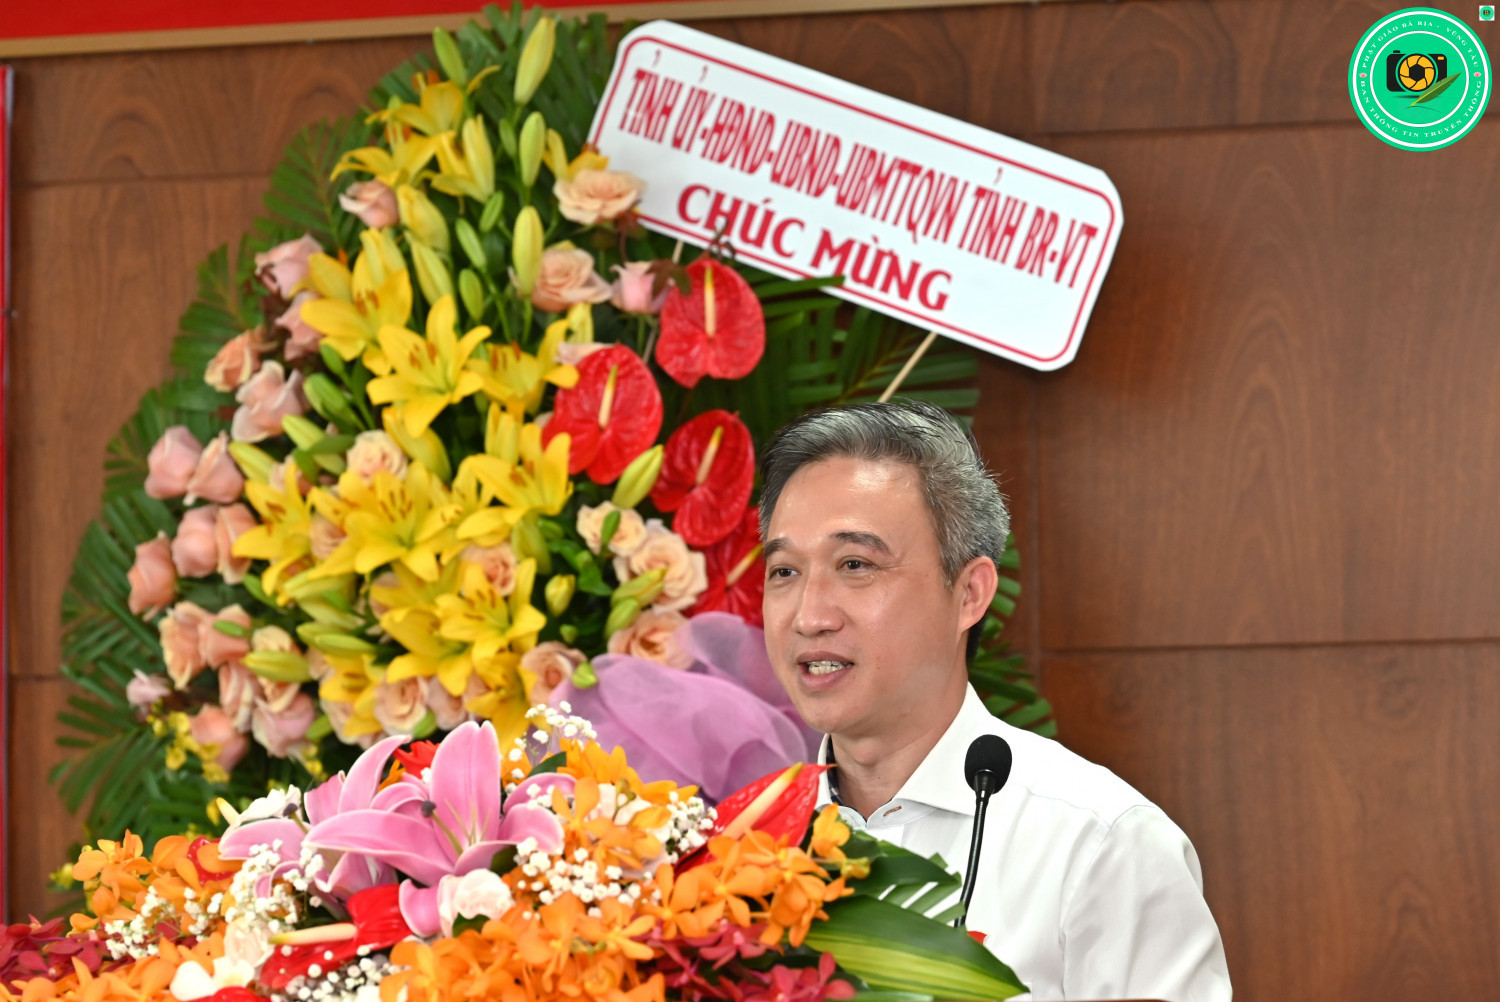 Ông Đặng Minh Thông, Phó Chủ tịch UBND tỉnh